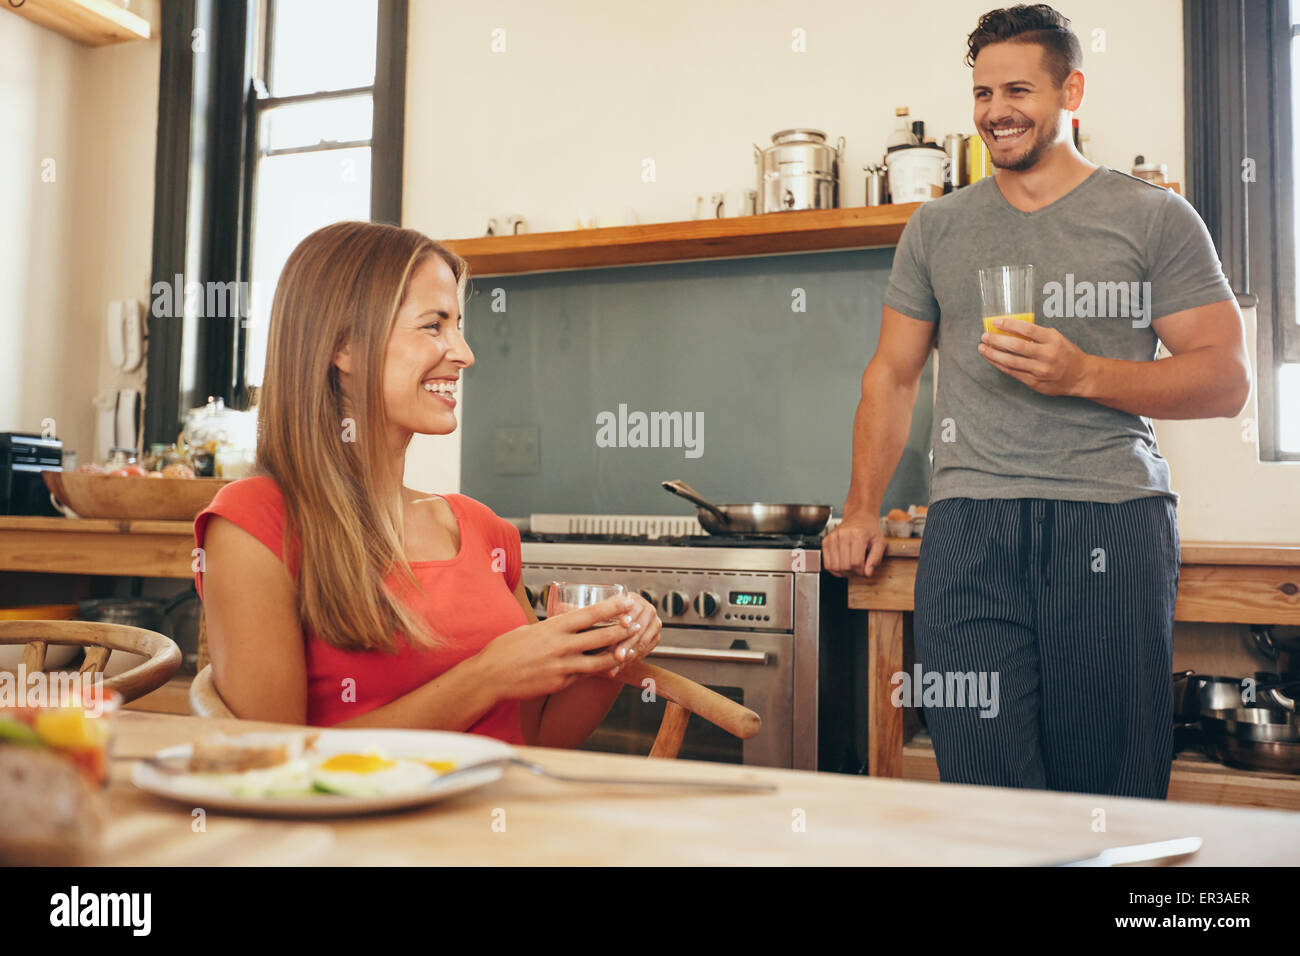 Aufnahme des jungen Paares in Küche lächelnd. Junge Frau sitzt am Frühstückstisch mit Mann, die Küchentheke hält eine g Stockfoto